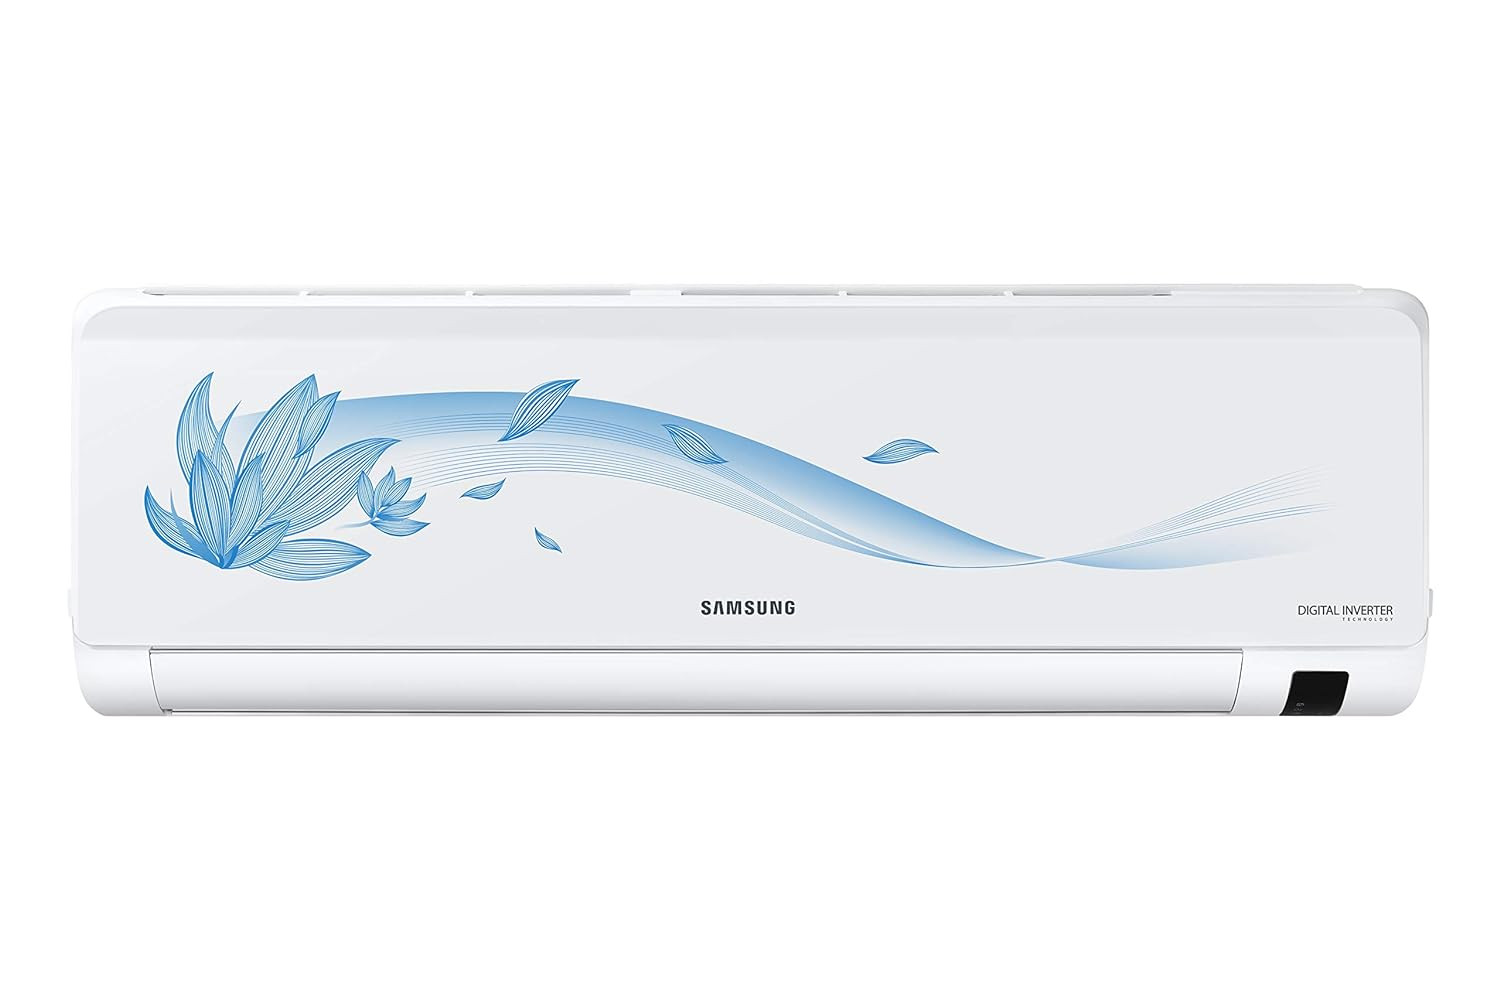 Samsung 15 Ton 3 Star Inverter Split AC Copper AR18TV3HFTZ White Paradise Bloom